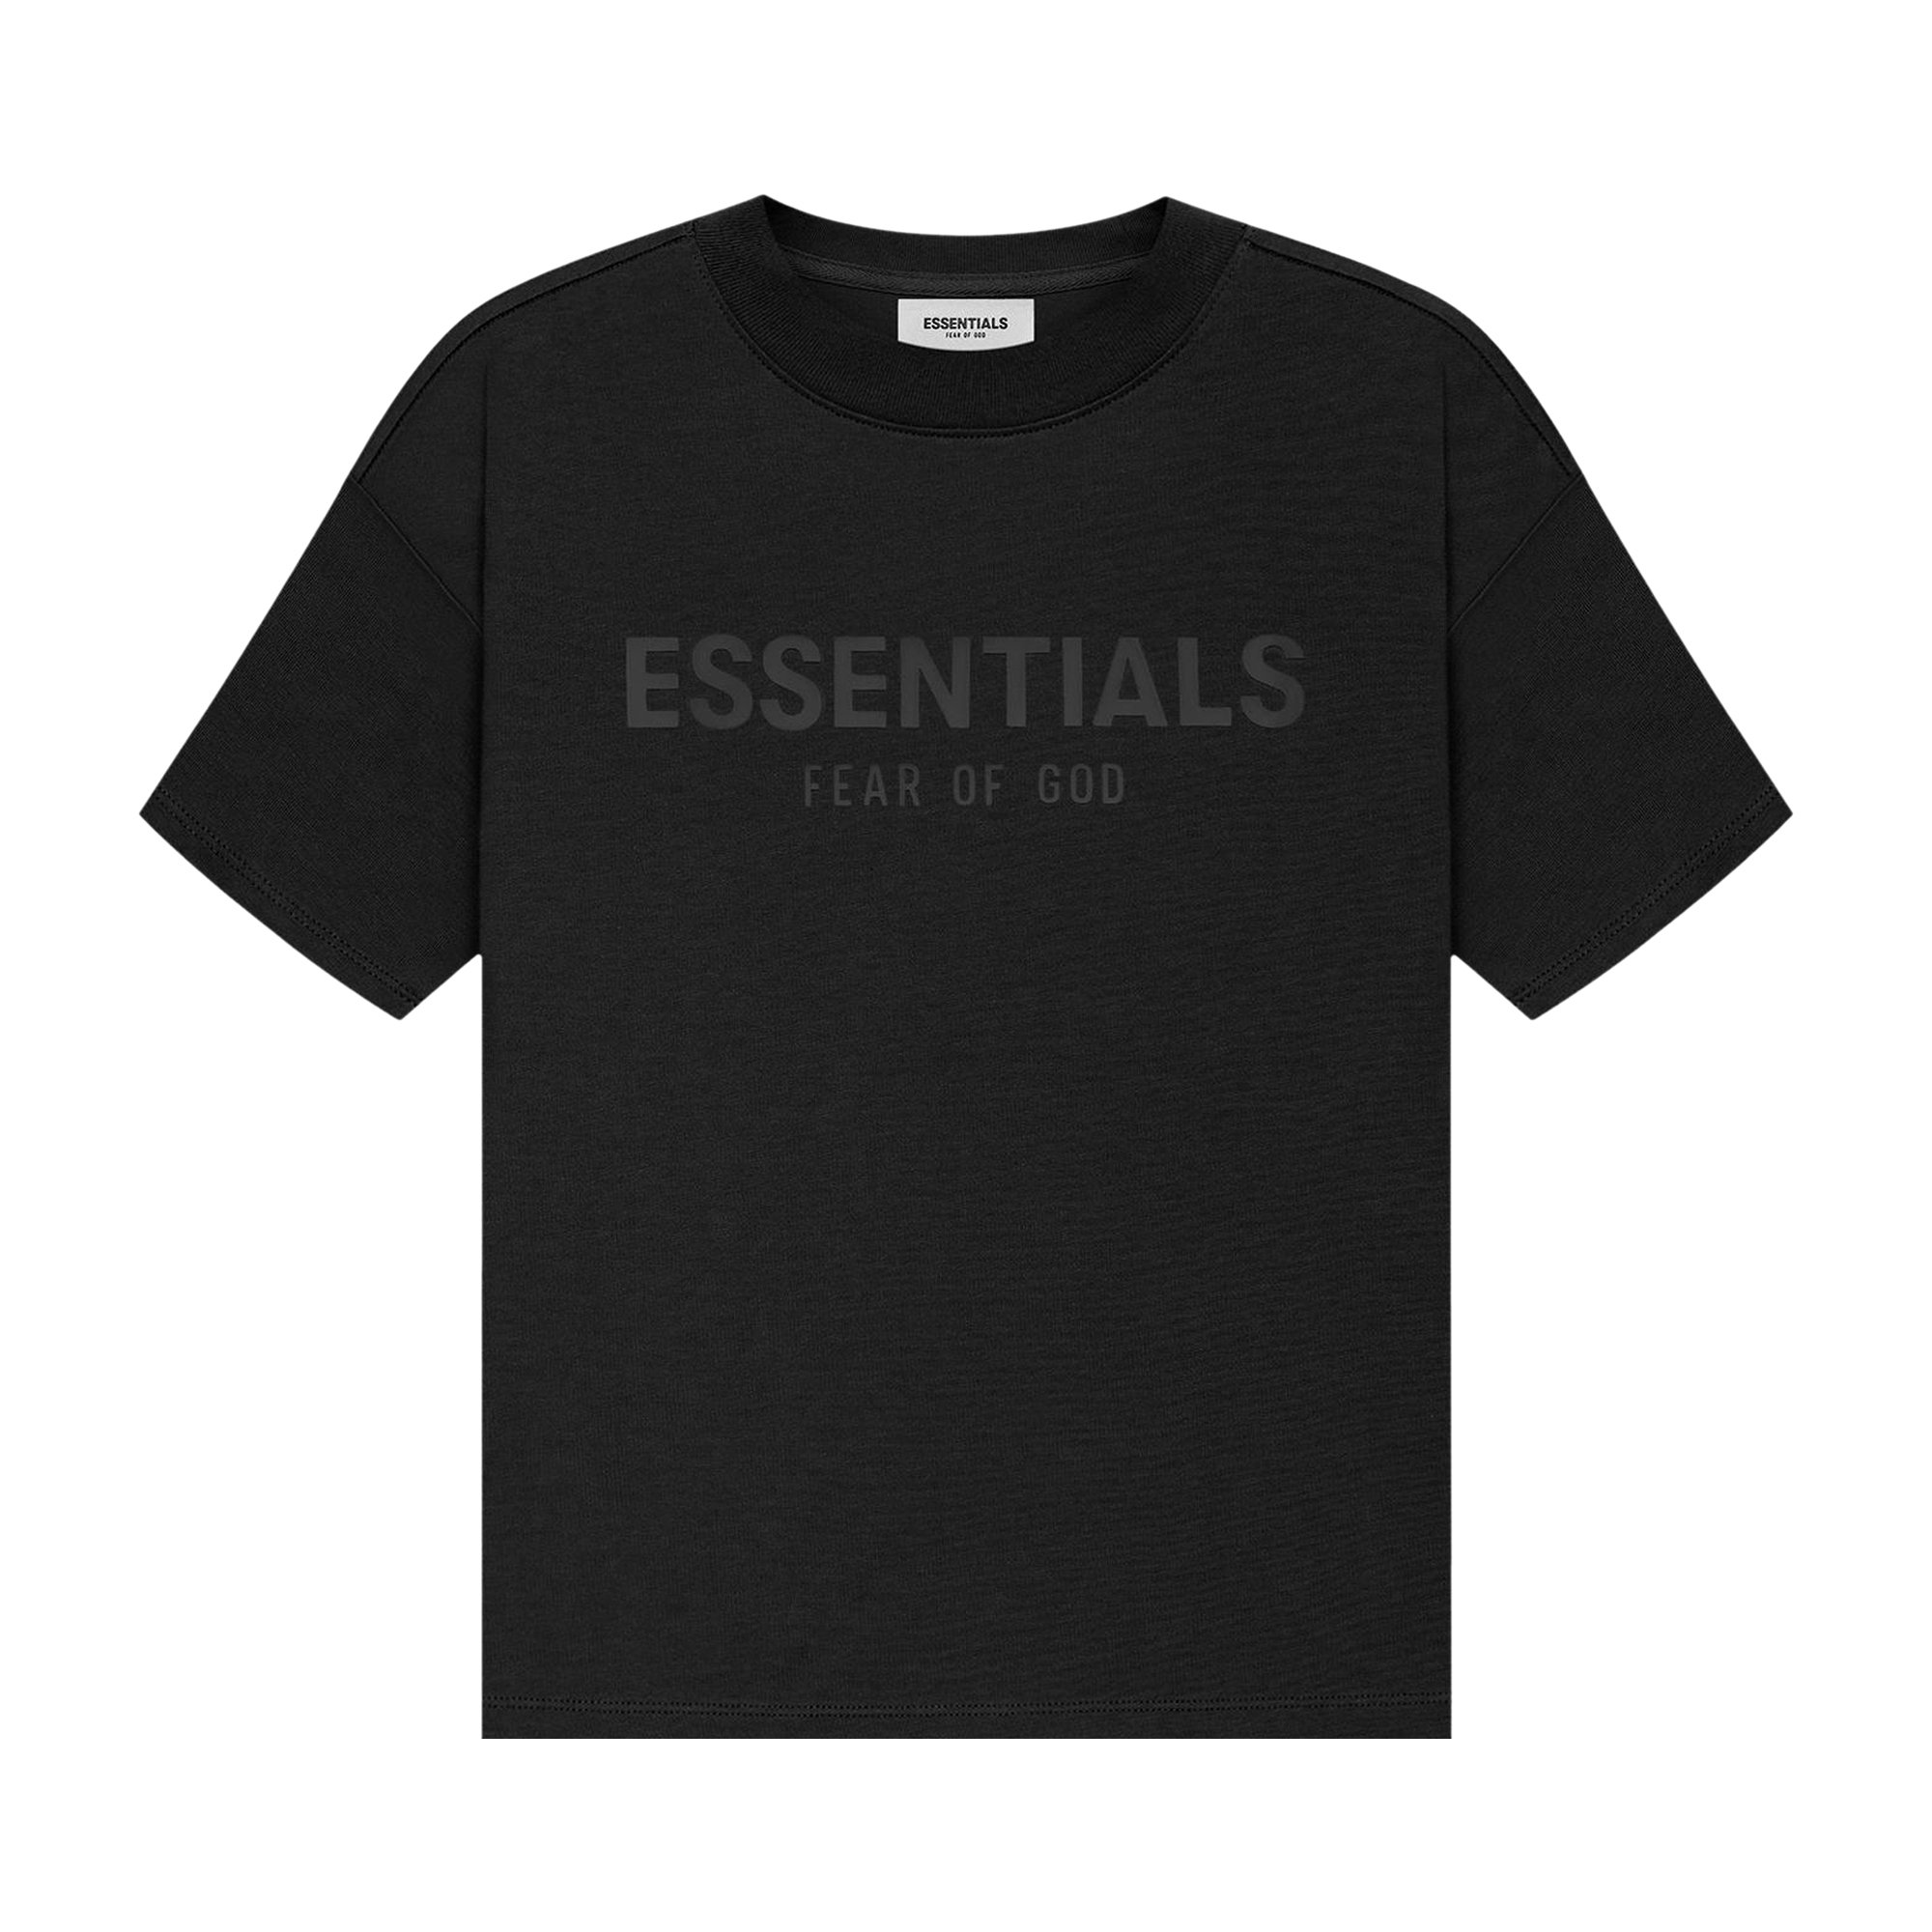 Детская футболка с короткими рукавами Fear of God Essentials, черная